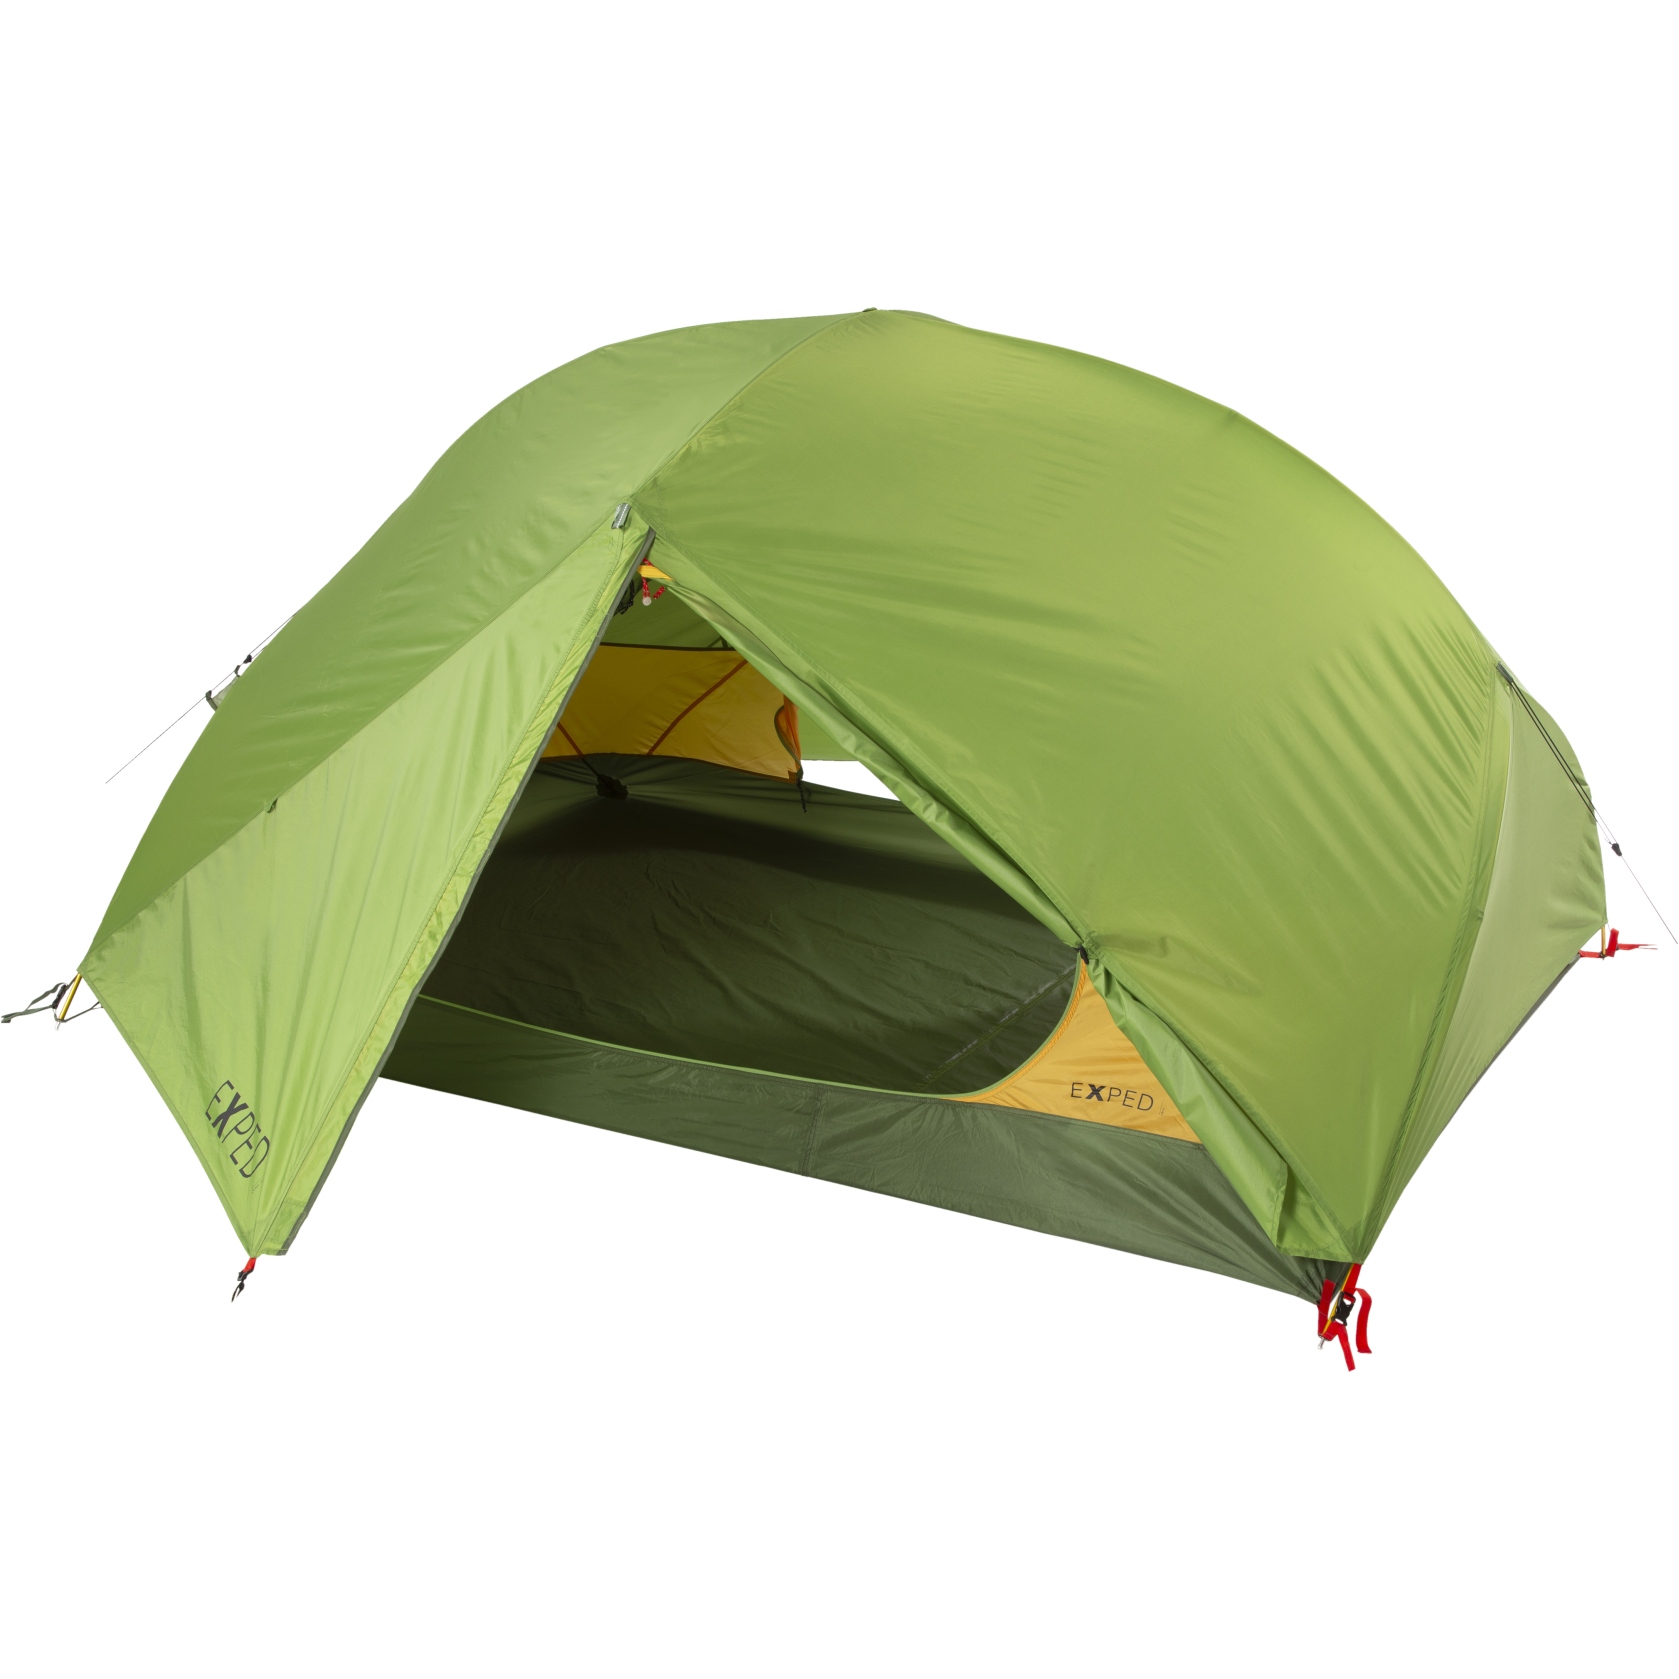 Productfoto van Exped Lyra III Tent - meadow